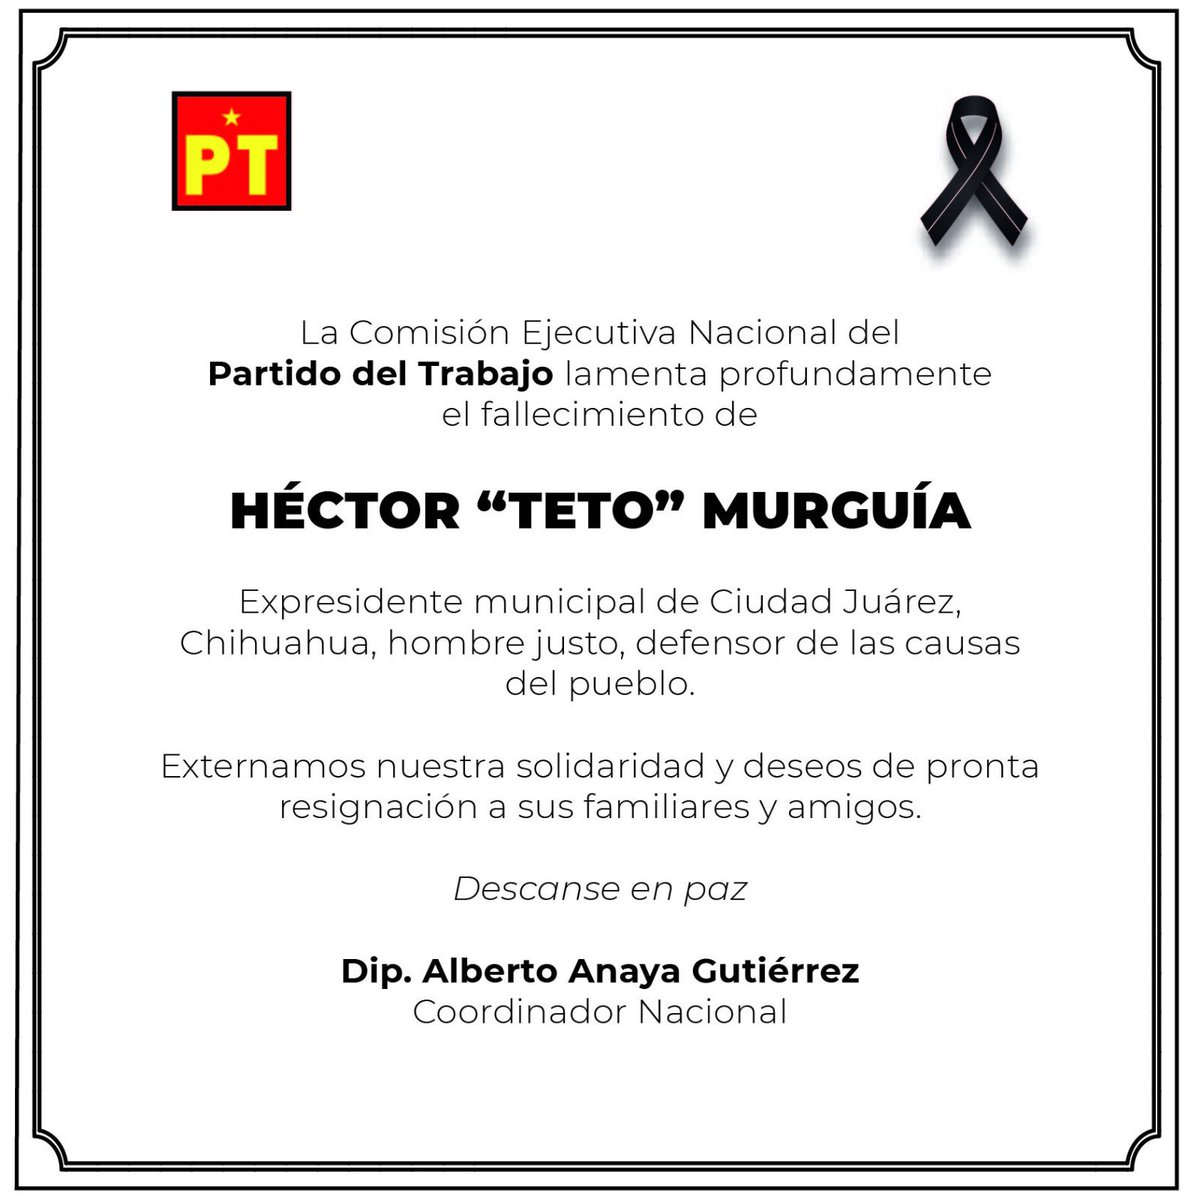 Lamento el fallecimiento de Héctor “Teto” Murguía, gran líder social de Ciudad Juárez, Chihuahua. Mi más sentido pésame a sus familiares y amigos.